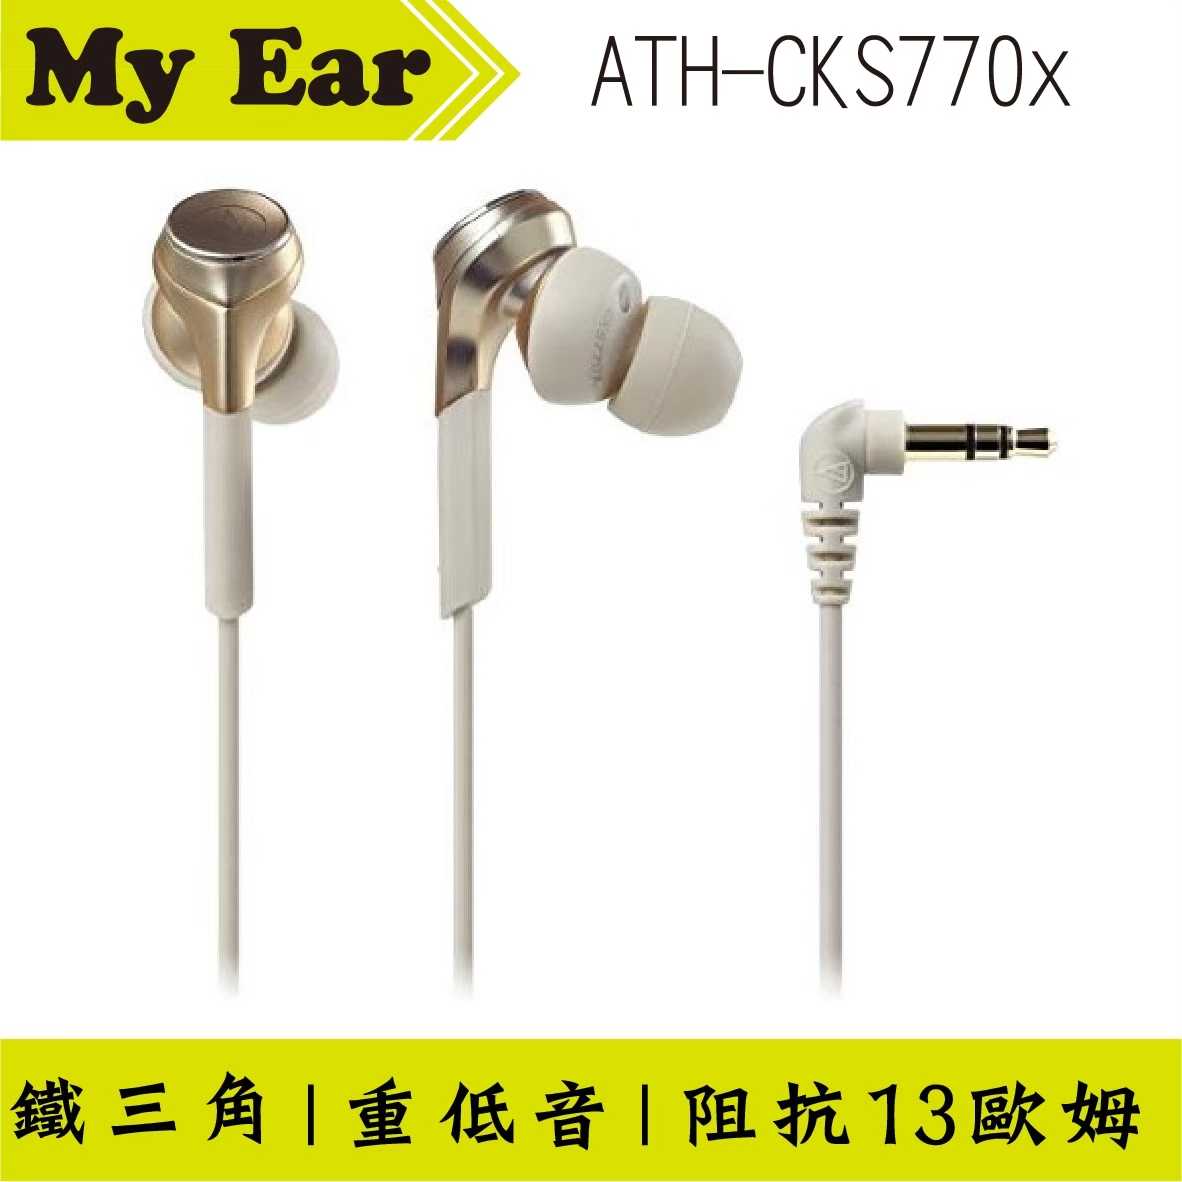 鐵三角 Cks770x 金色 重低音 耳塞式 耳機 | My Ear 耳機專門店